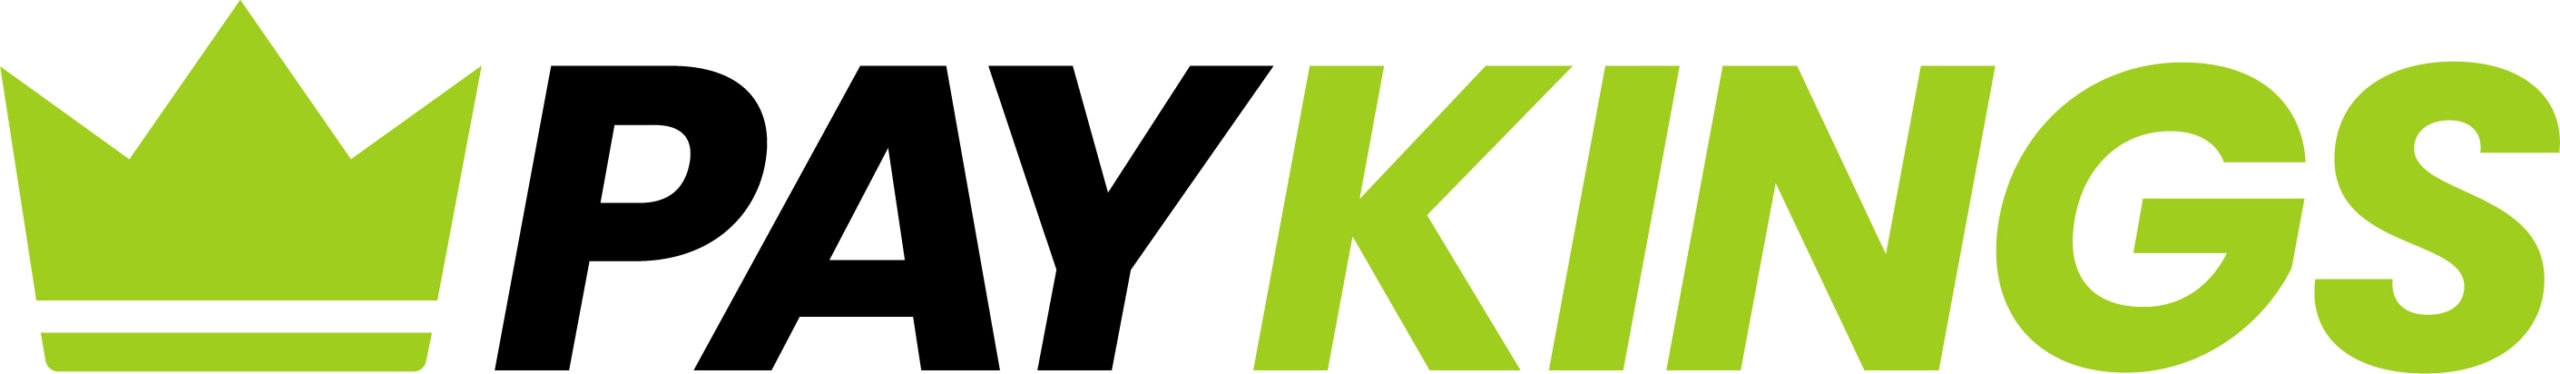 image of paykings logo